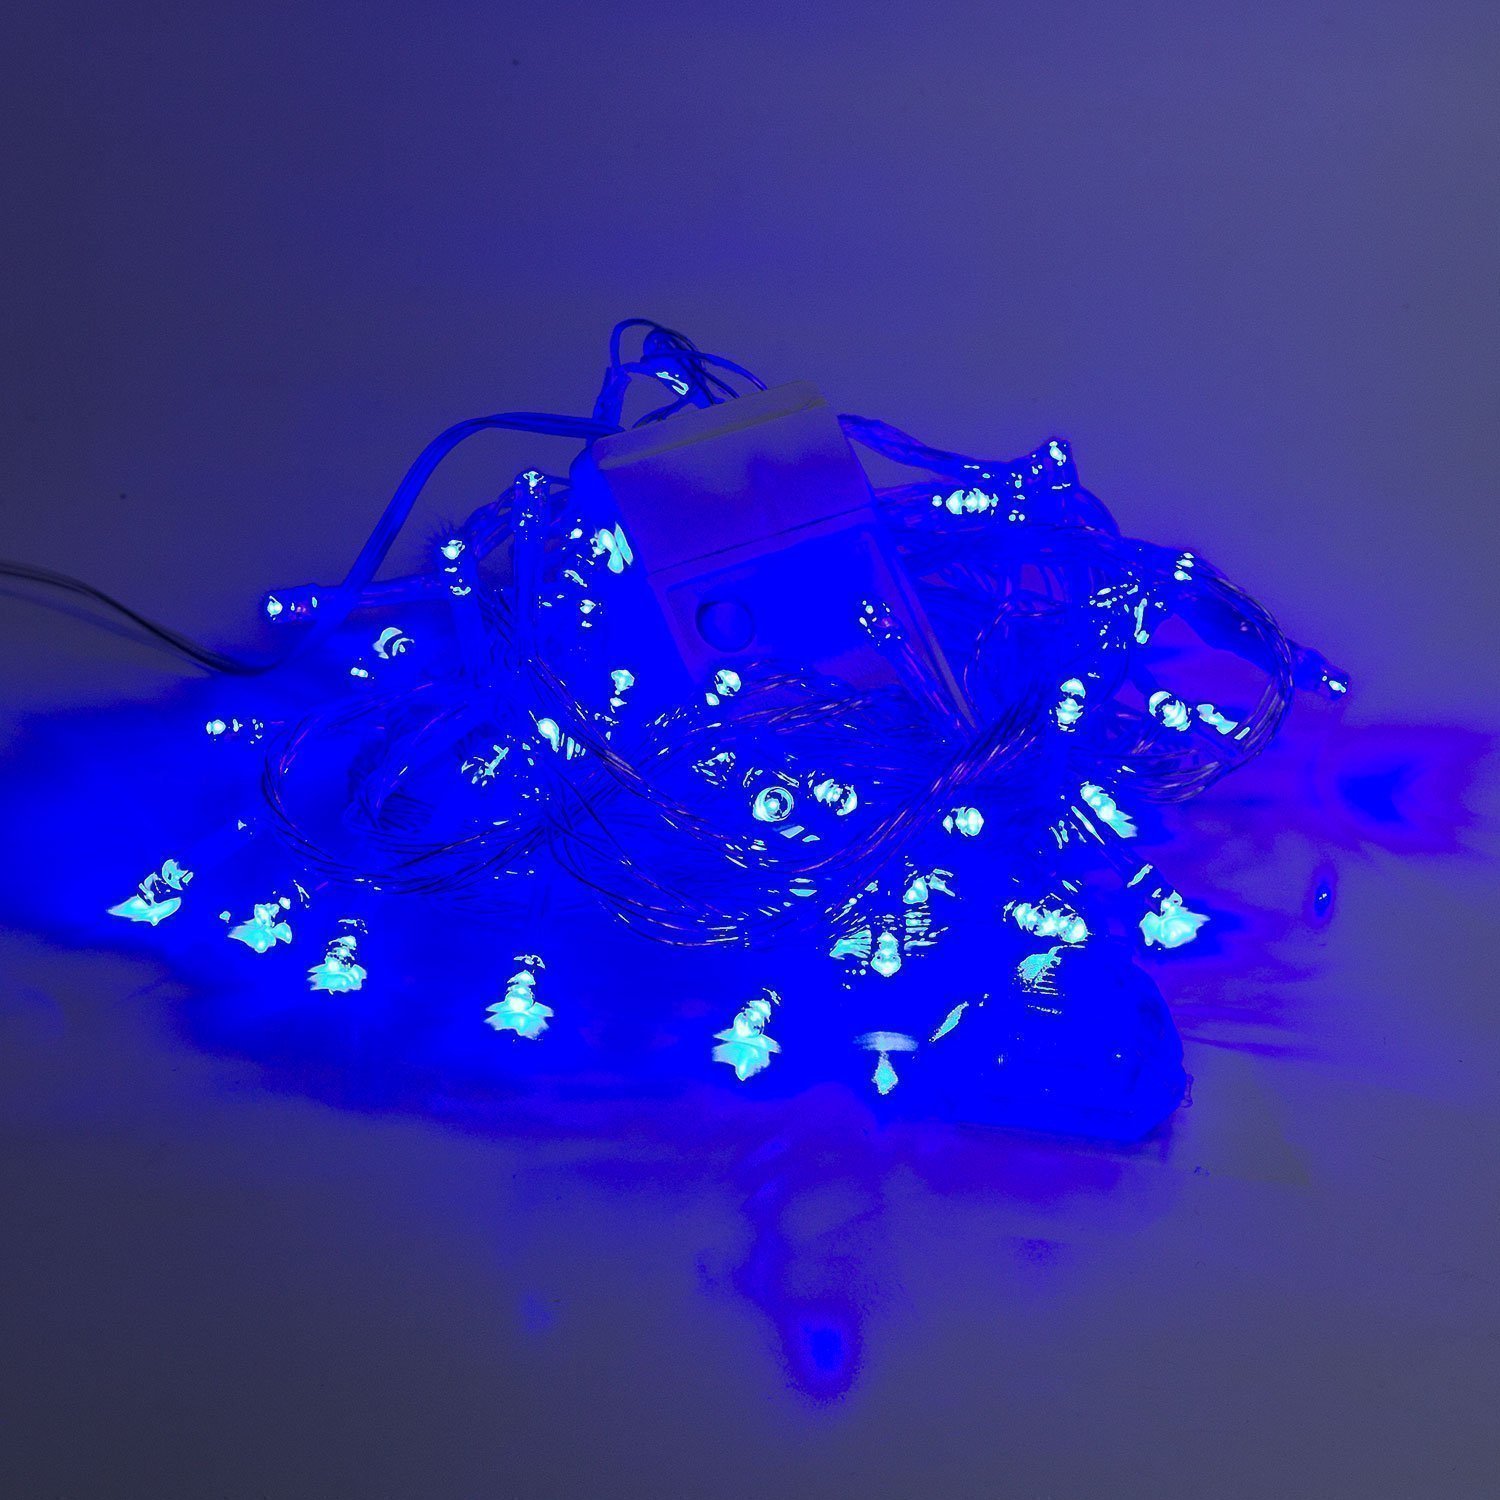 Гирлянда Kurato светодиодная нить, ламп: 60 шт., 6 м, режимов: 1, от сети, синий (132727)